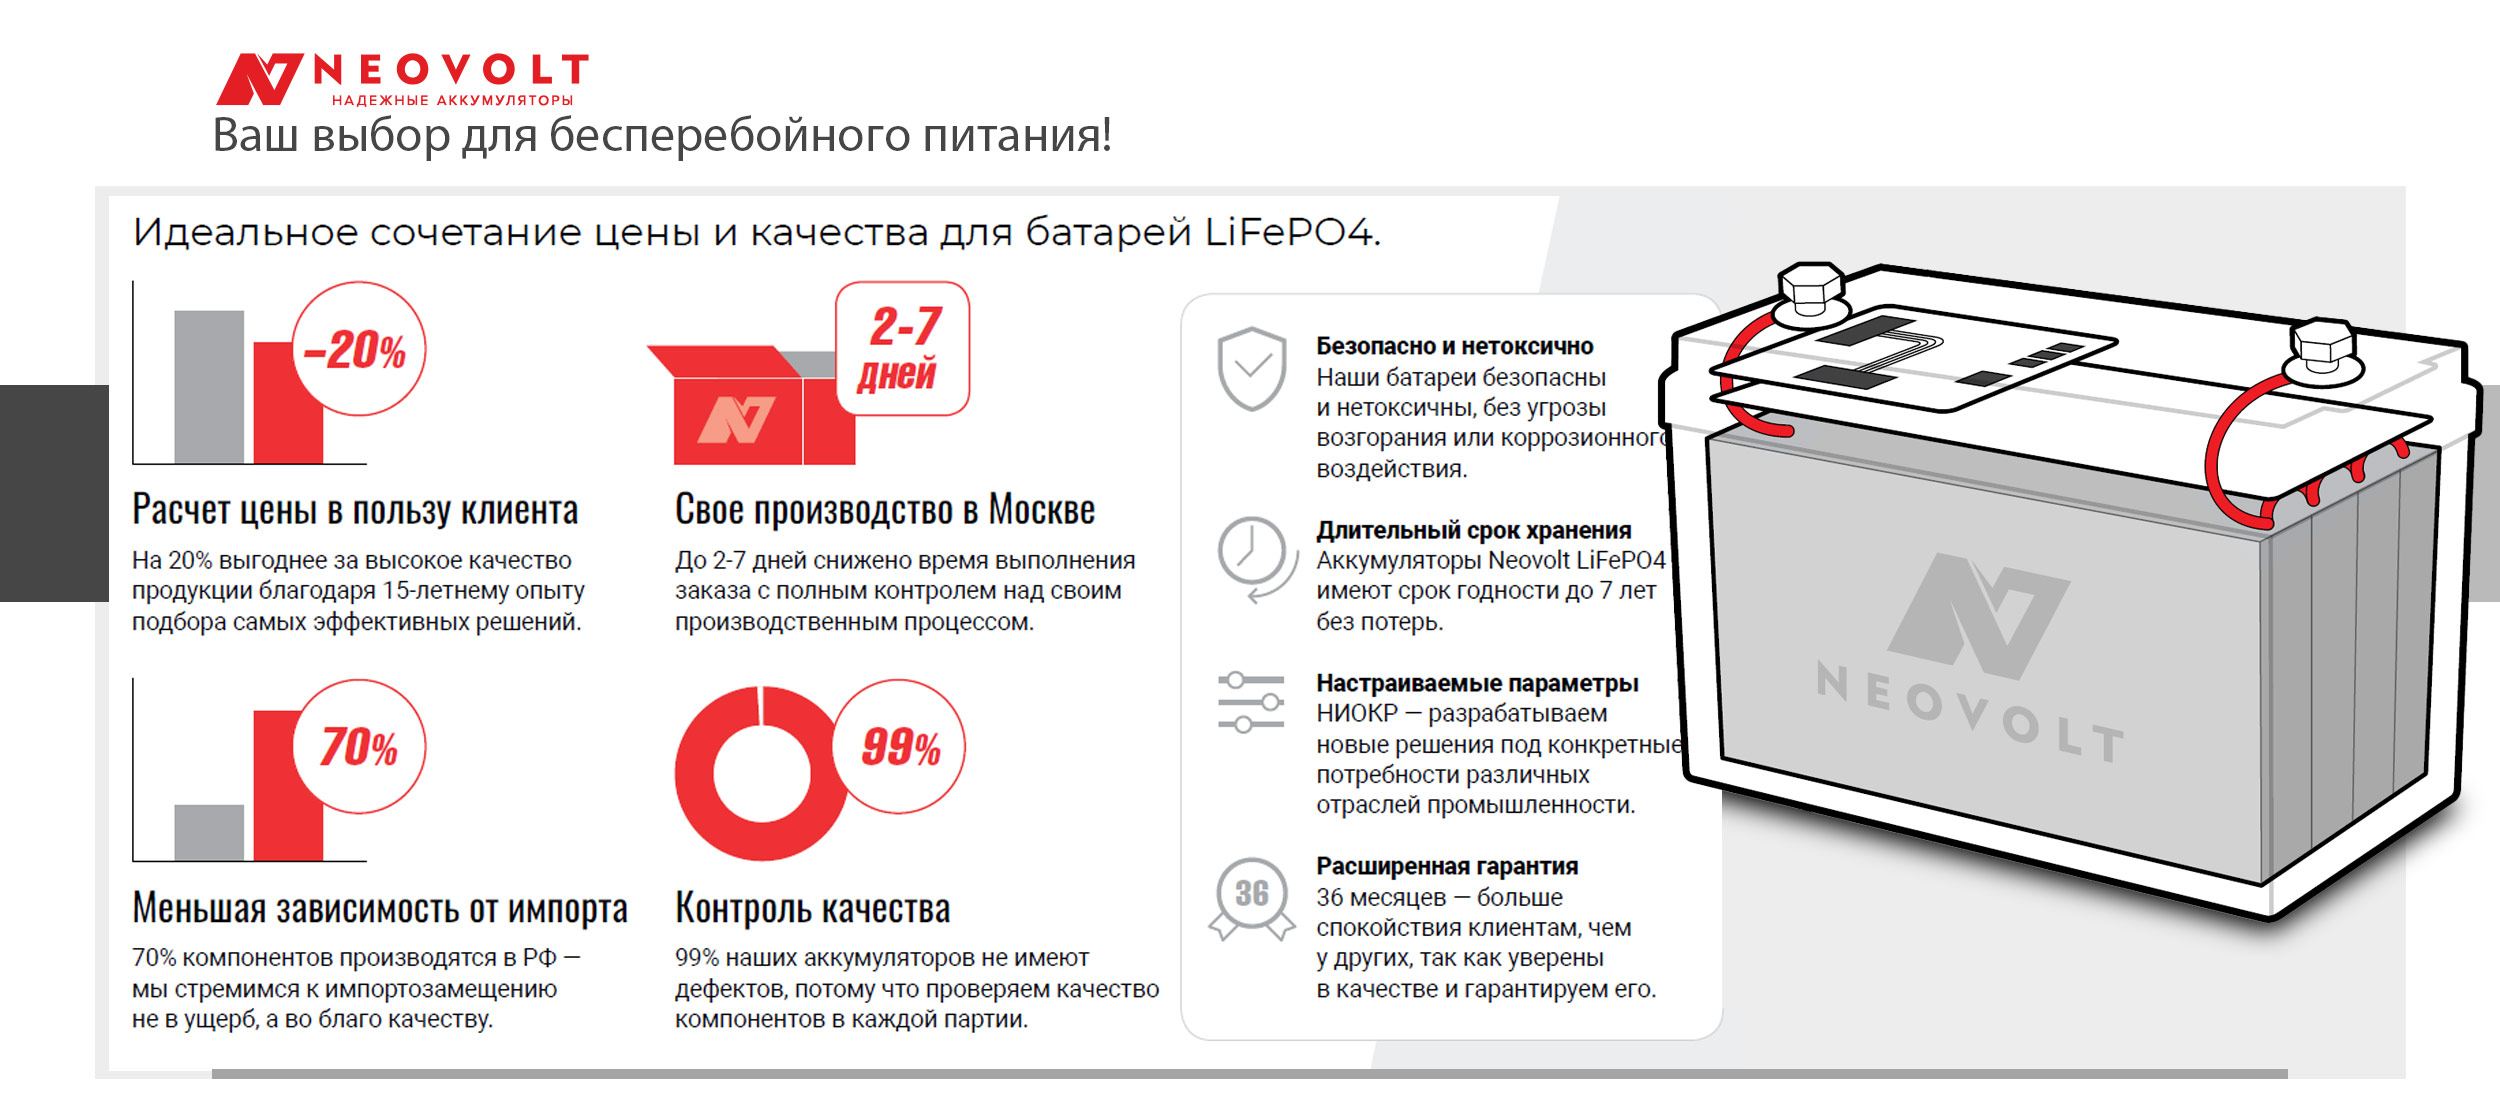 Узнайте особенности российского производства аккумуляторных батарейных модулей Neovolt для ИБП в стойку.